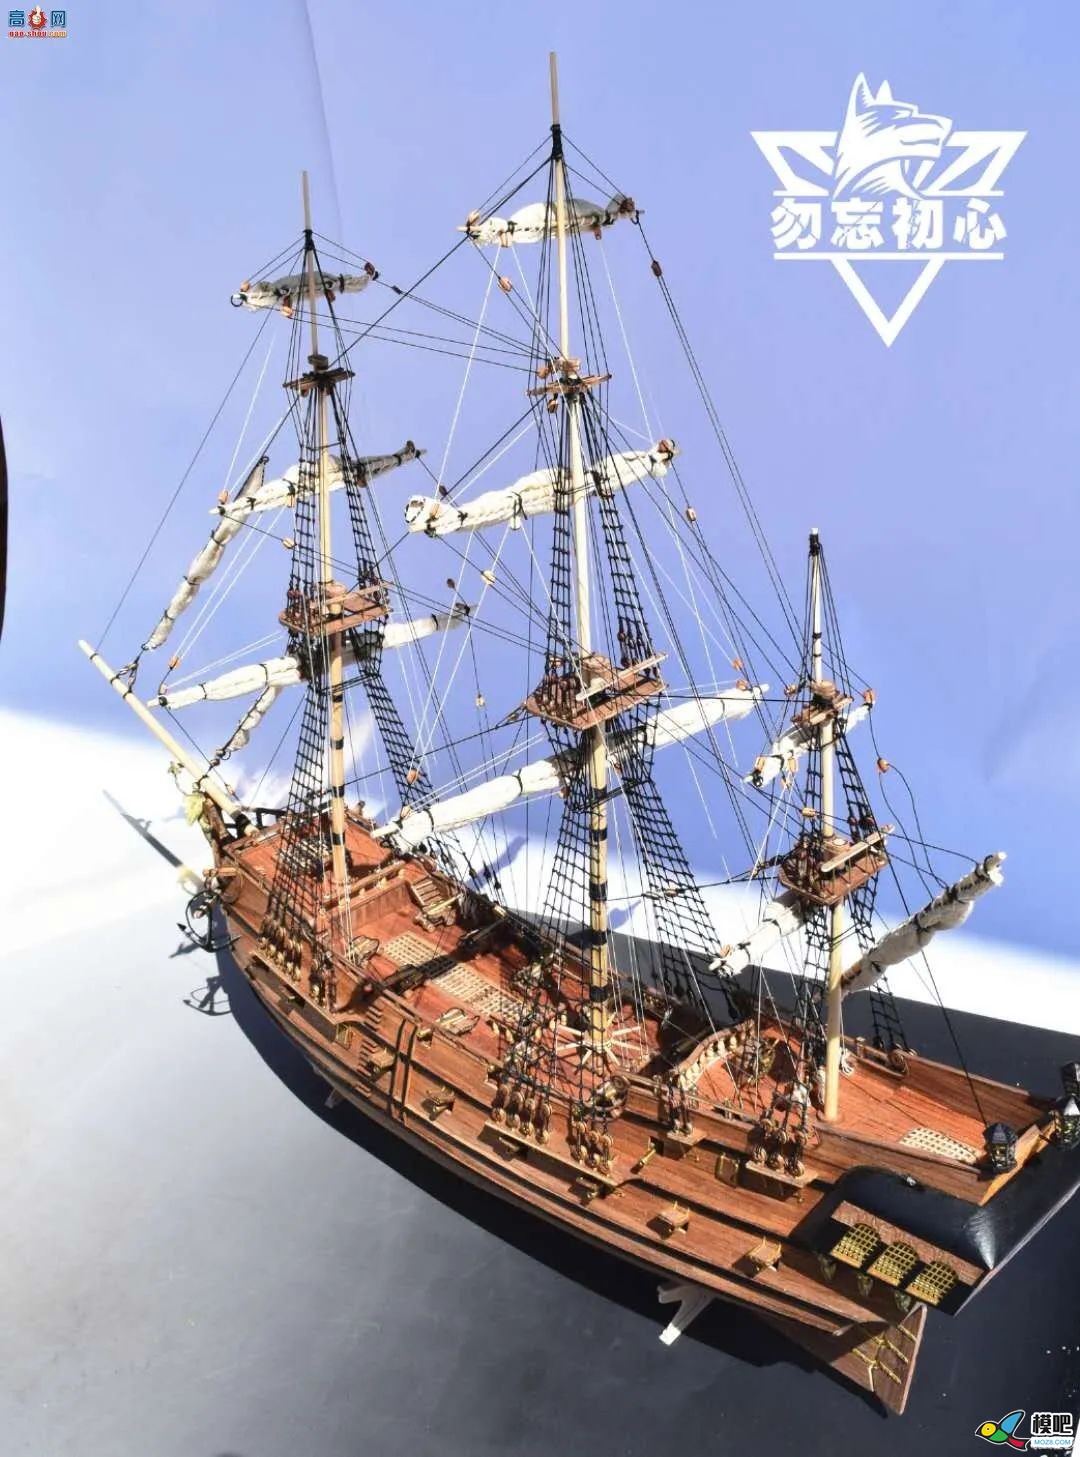 勿忘初心作品 | 1/50 原色黑珍珠古帆船 船模,模型 作者:000100^ 1268 